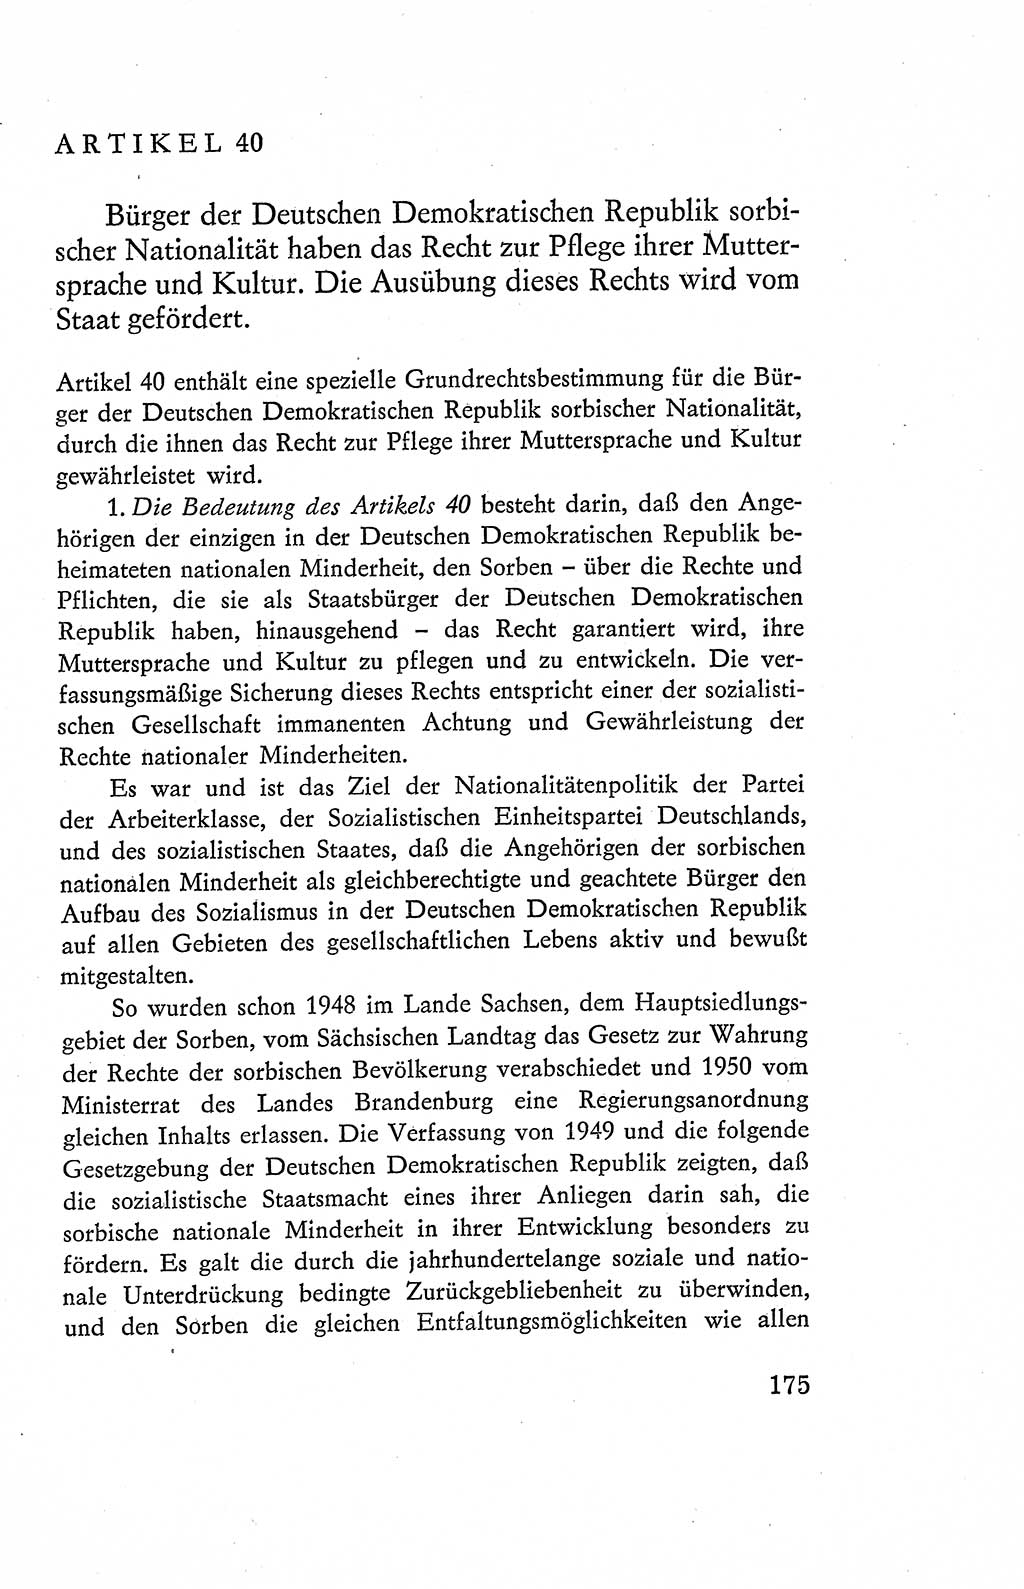 Verfassung der Deutschen Demokratischen Republik (DDR), Dokumente, Kommentar 1969, Band 2, Seite 175 (Verf. DDR Dok. Komm. 1969, Bd. 2, S. 175)